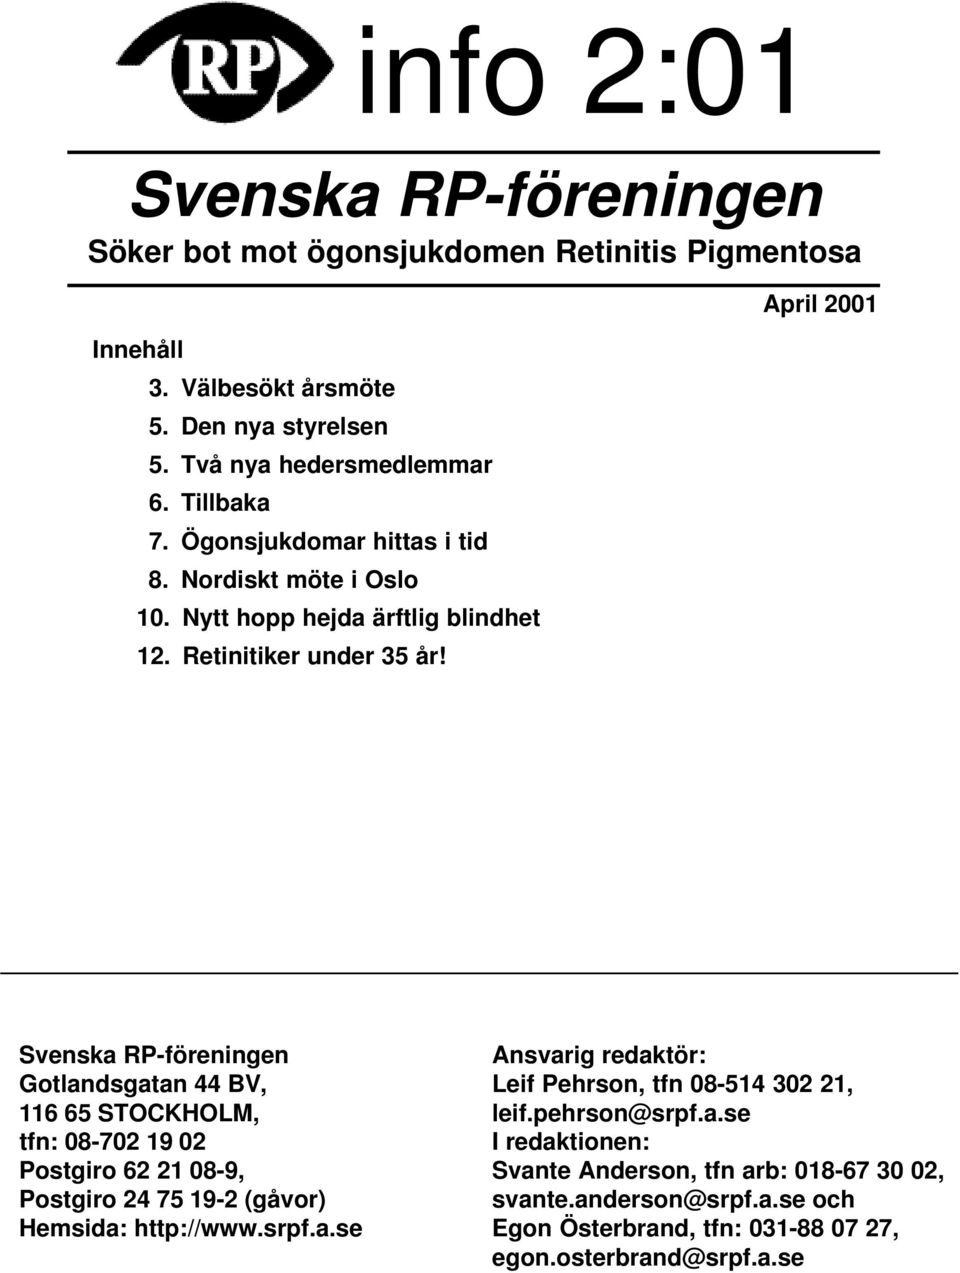 April 2001 Svenska RP-föreningen Gotlandsgatan 44 BV, 116 65 STOCKHOLM, tfn: 08-702 19 02 Postgiro 62 21 08-9, Postgiro 24 75 19-2 (gåvor) Hemsida: http://www.srpf.a.se Ansvarig redaktör: Leif Pehrson, tfn 08-514 302 21, leif.